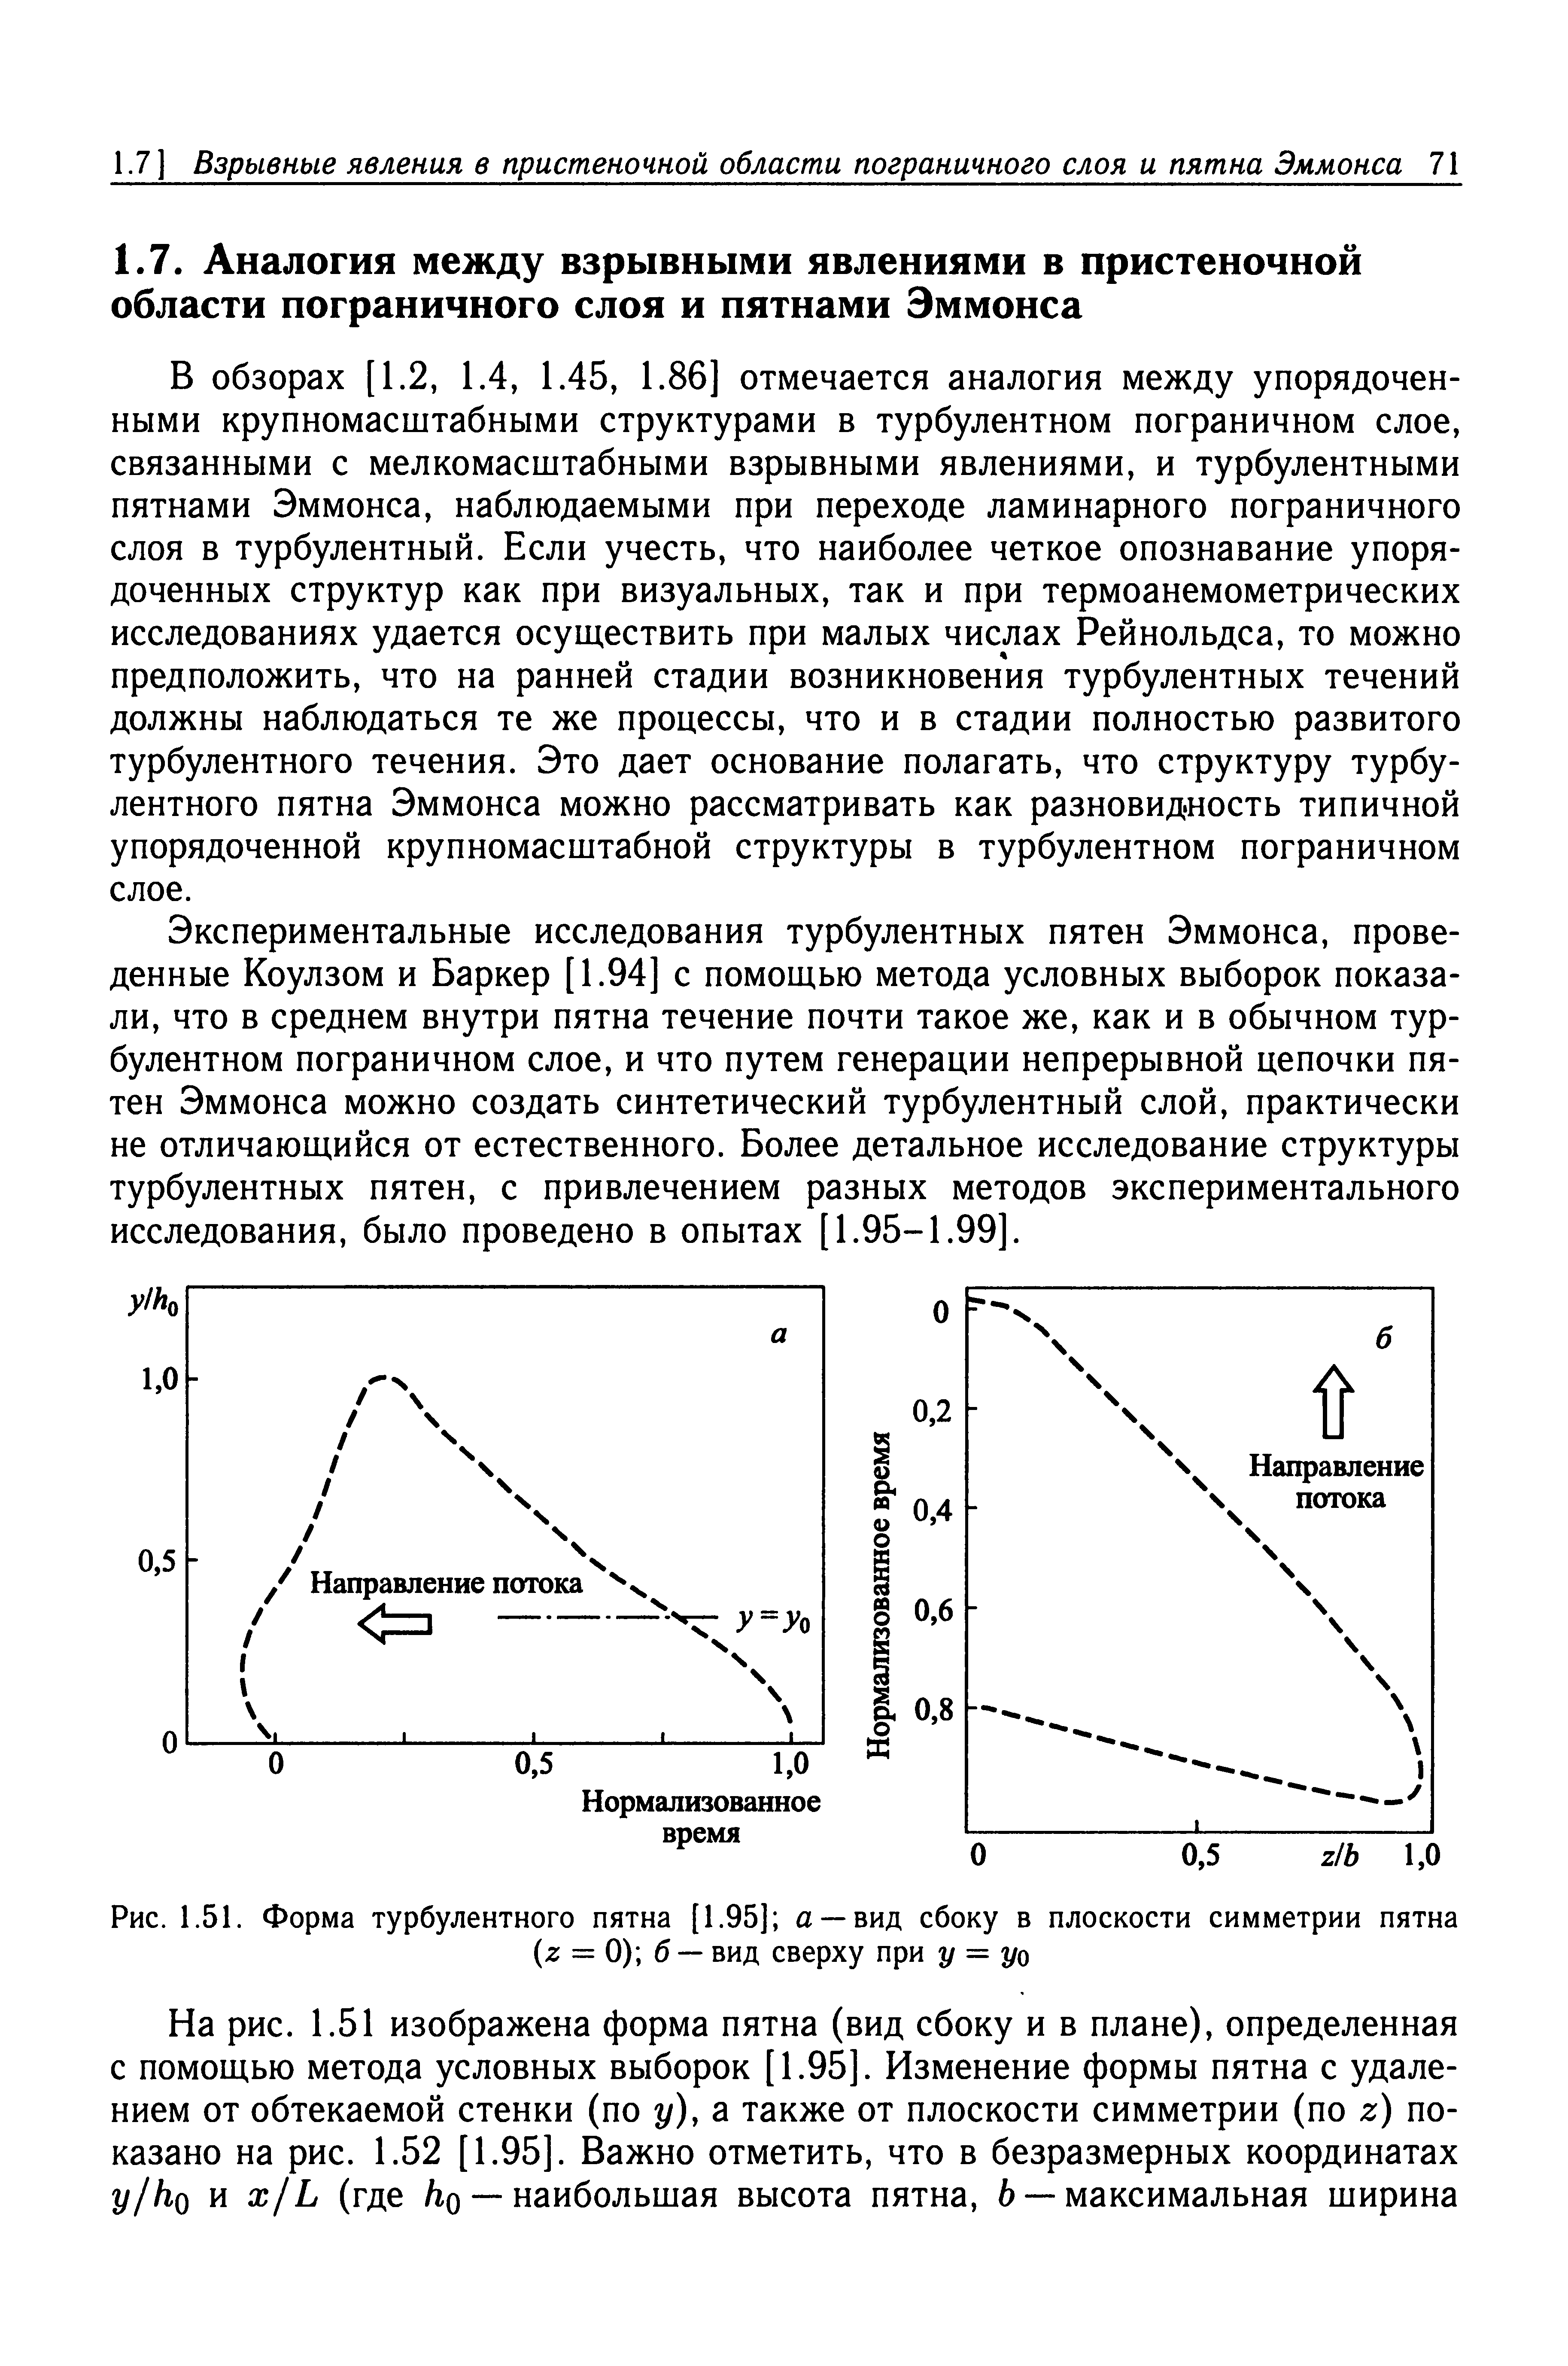 В обзорах [1.2, 1.4, 1.45, 1.86] отмечается аналогия между упорядоченными крупномасштабными структурами в турбулентном пограничном слое, связанными с мелкомасштабными взрывными явлениями, и турбулентными пятнами Эммонса, наблюдаемыми при переходе ламинарного пограничного слоя в турбулентный. Если учесть, что наиболее четкое опознавание упорядоченных структур как при визуальных, так и при термоанемометрических исследованиях удается осуществить при малых числах Рейнольдса, то можно предположить, что на ранней стадии возникновения турбулентных течений должны наблюдаться те же процессы, что и в стадии полностью развитого турбулентного течения. Это дает основание полагать, что структуру турбулентного пятна Эммонса можно рассматривать как разновидность типичной упорядоченной крупномасштабной структуры в турбулентном пограничном слое.